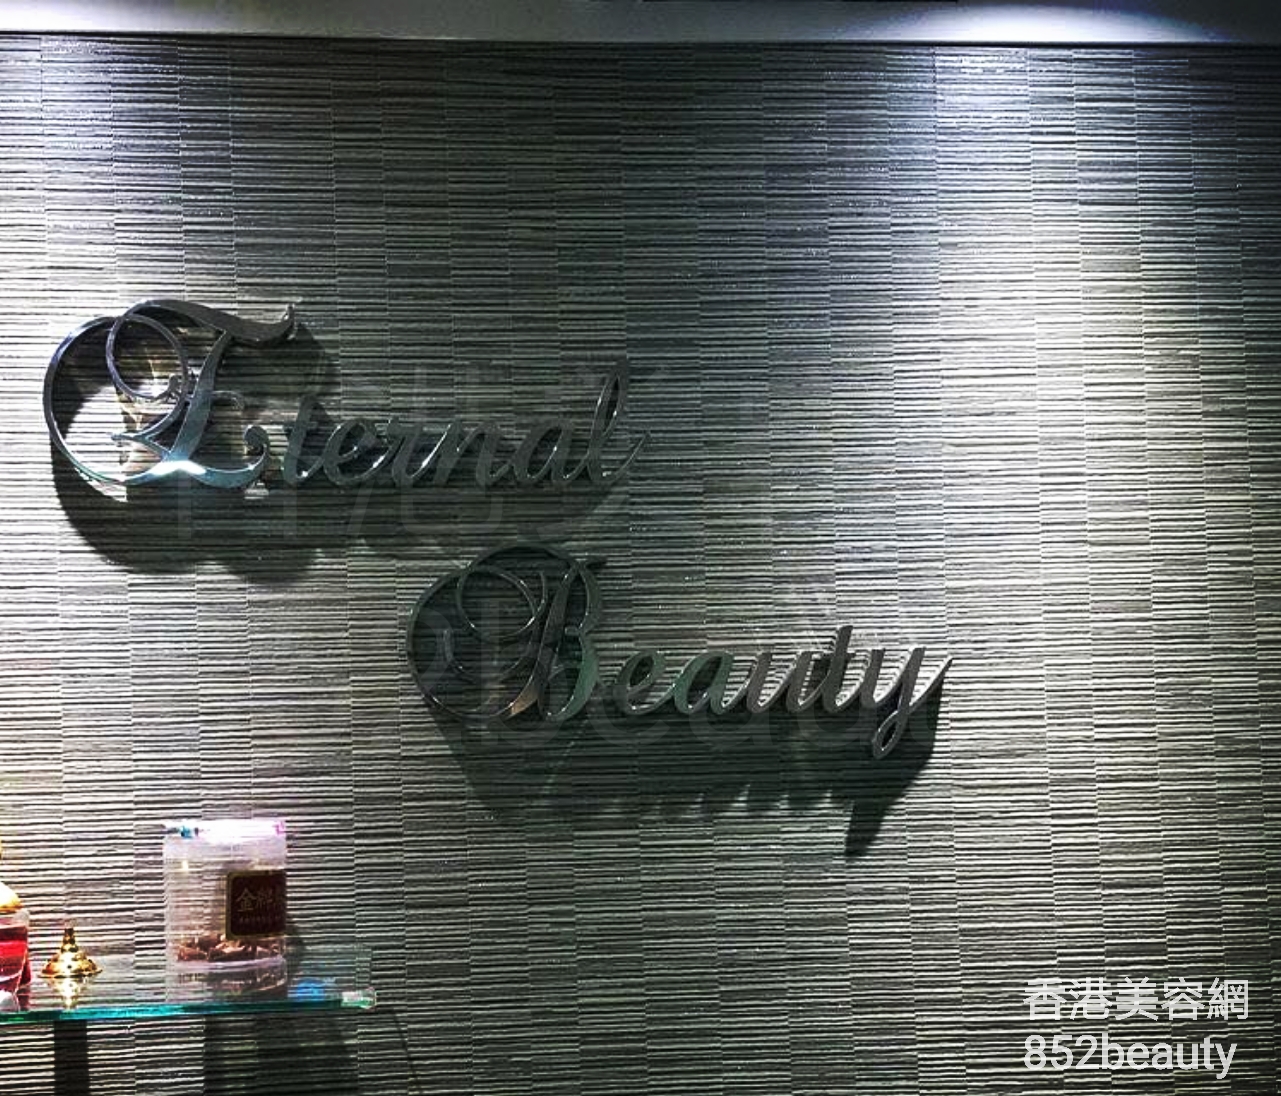 美容院 Beauty Salon: Eternal beauty